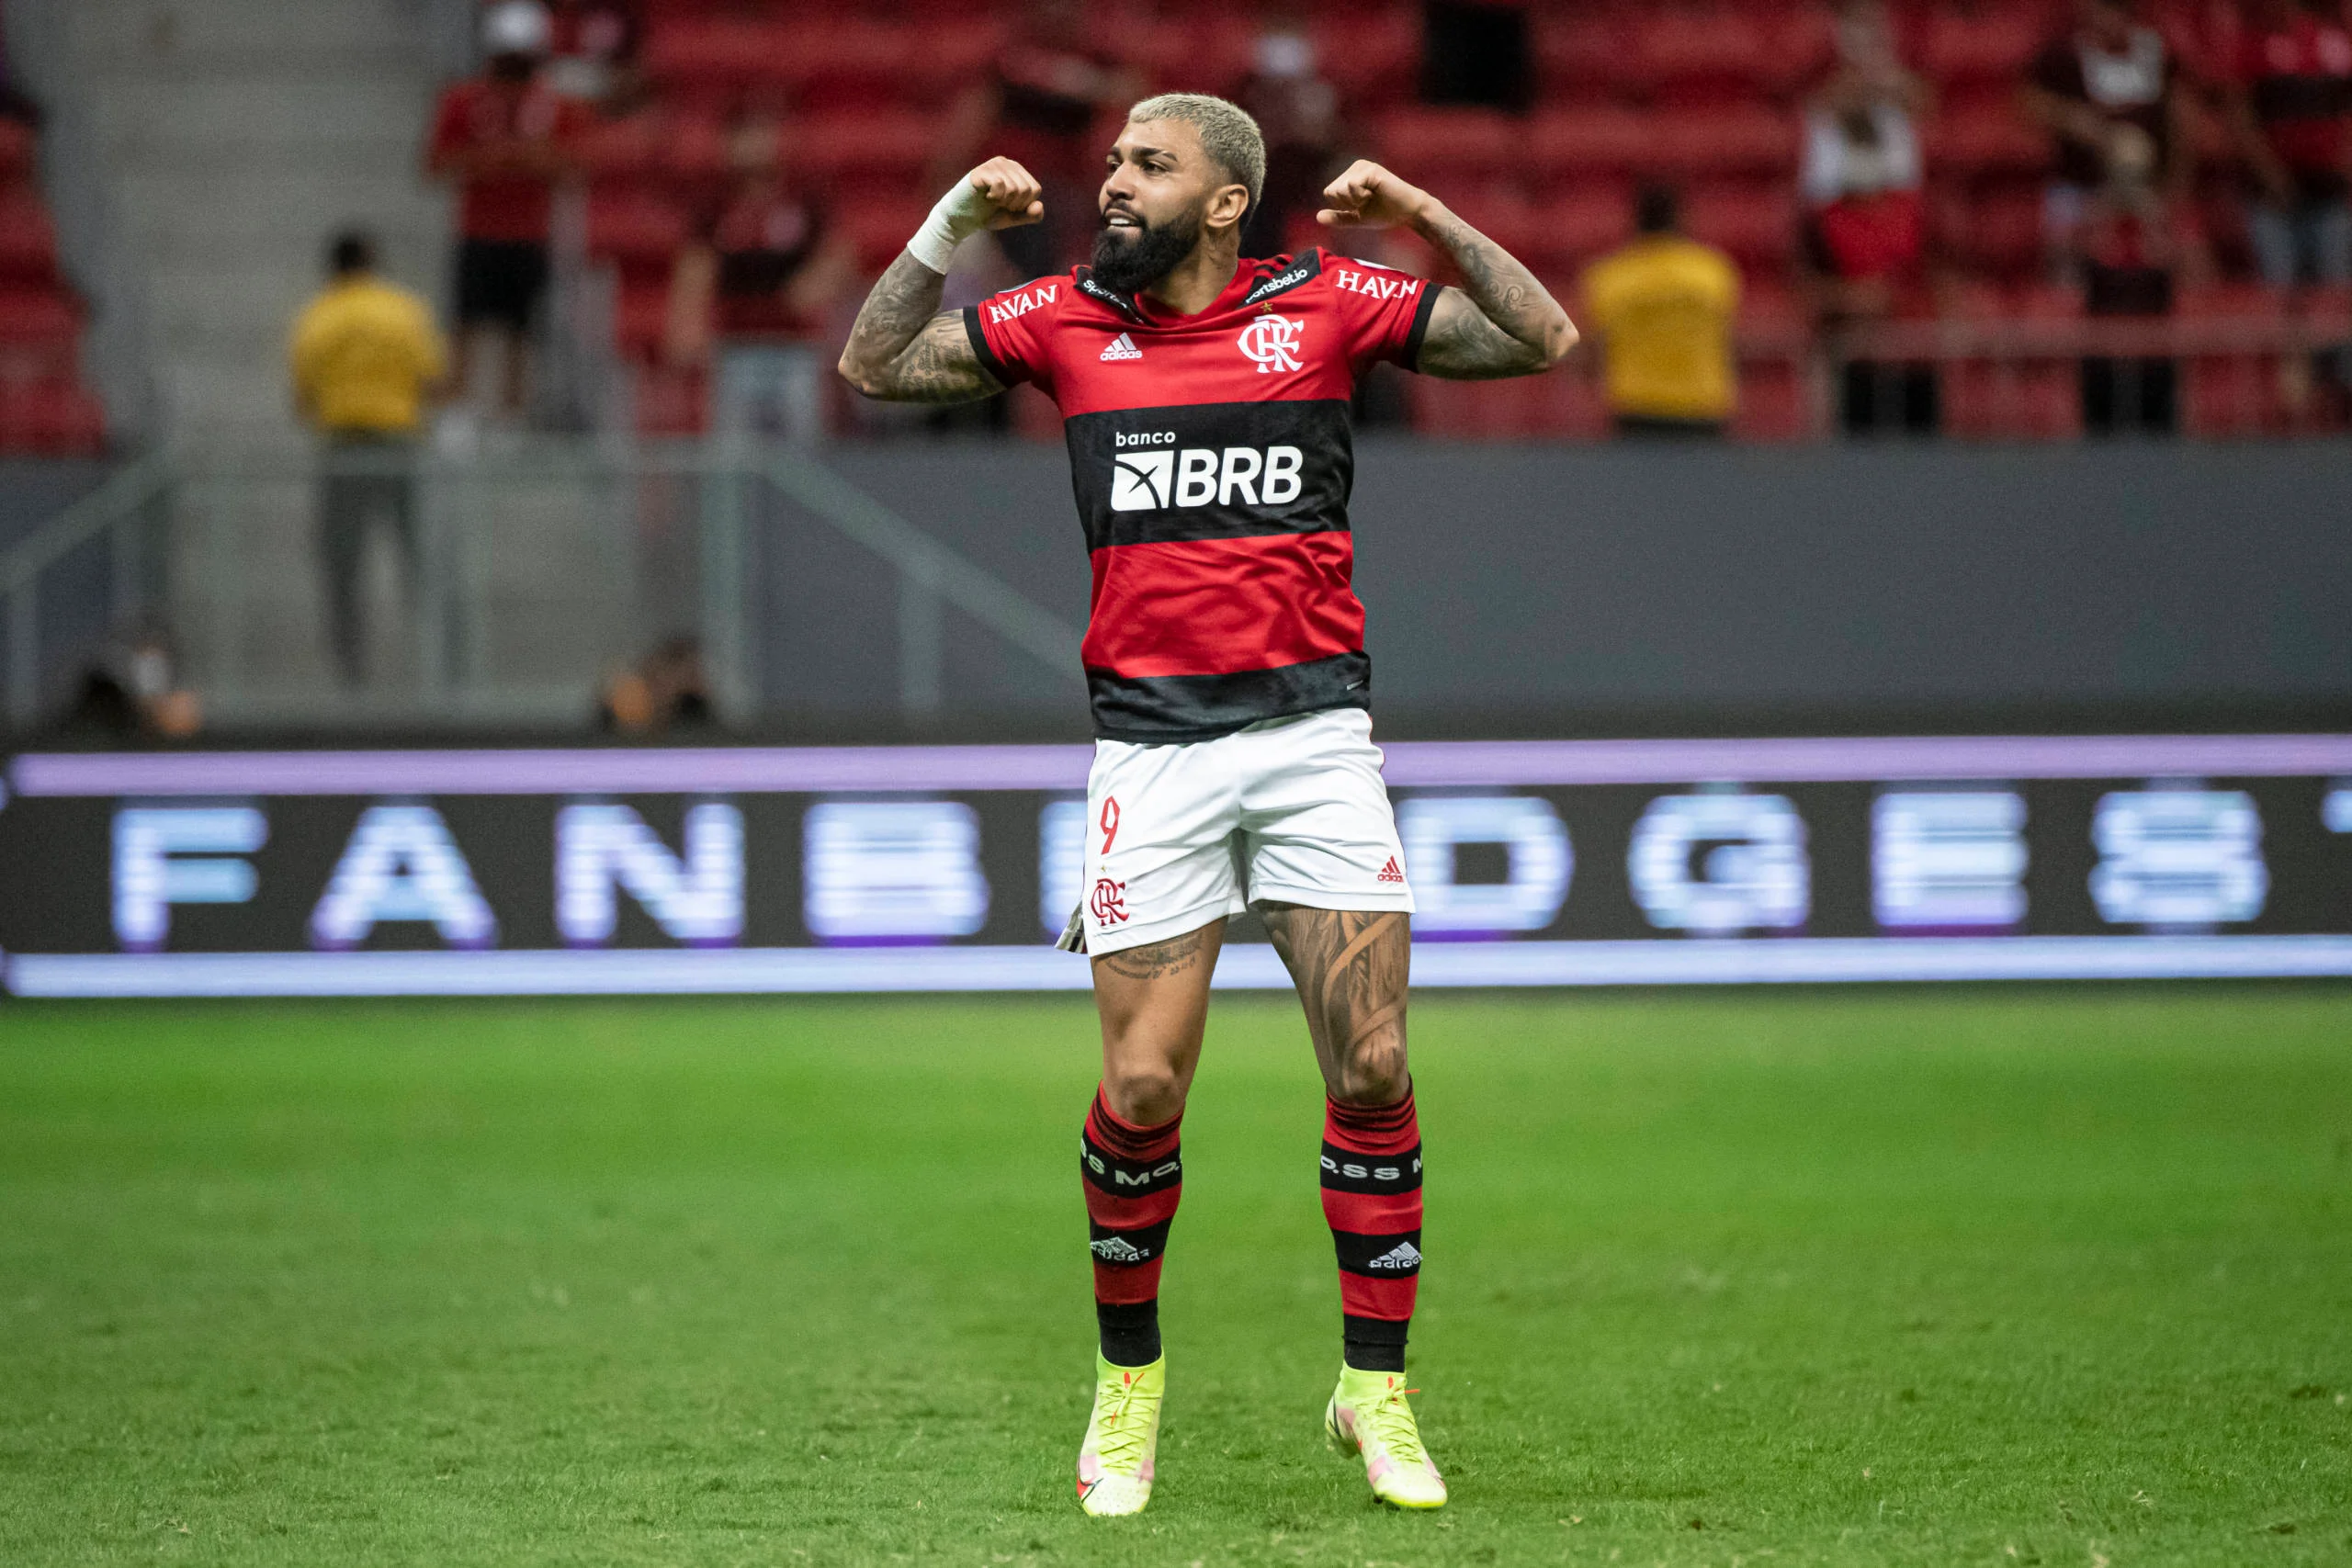  vitória do Flamengo fará o camisa 9 da Gávea ser parte de mais um feito histórico com a camisa do Flamengo.